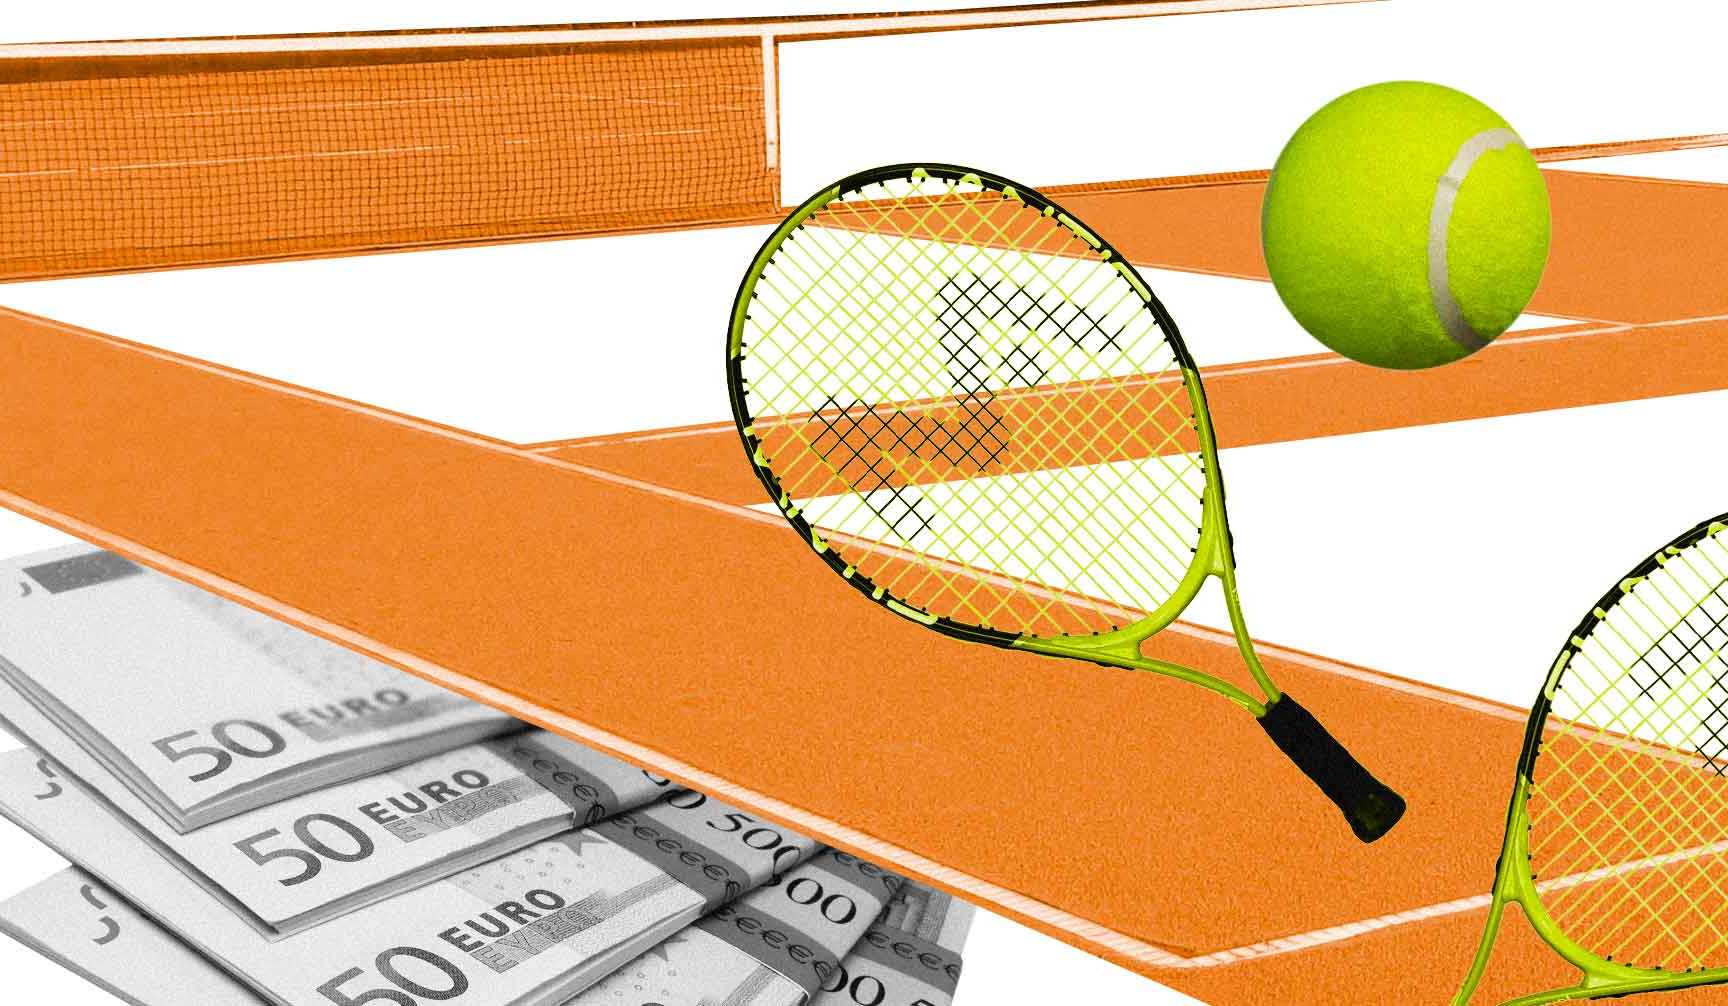 Договорные матчи в теннисе. Организаторы за год заработали около 3,6 млн евро